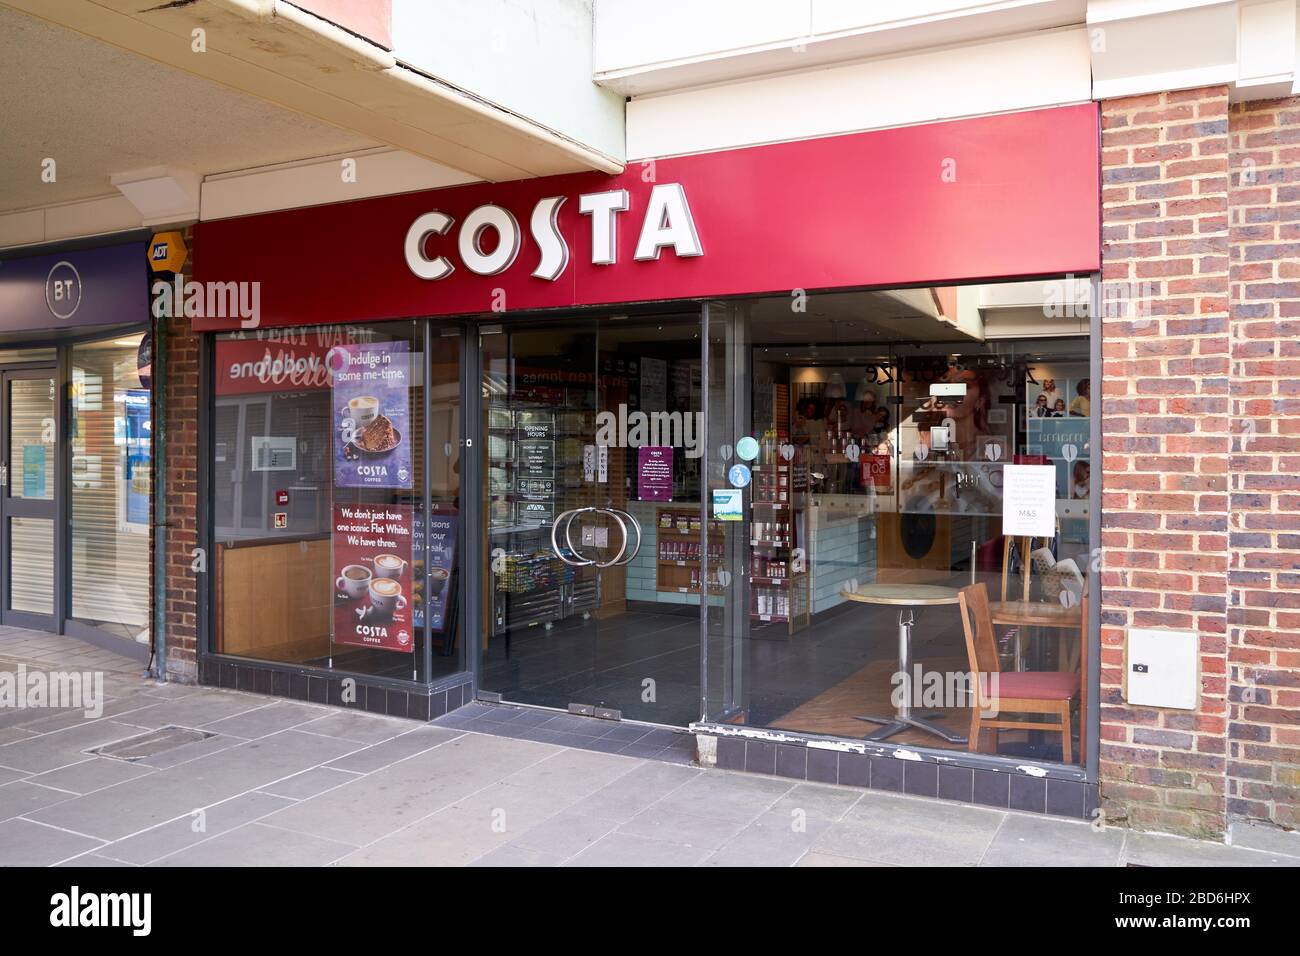 Café Costa vide fermé pendant l'urgence du Covid-19 Coronavirus Banque D'Images